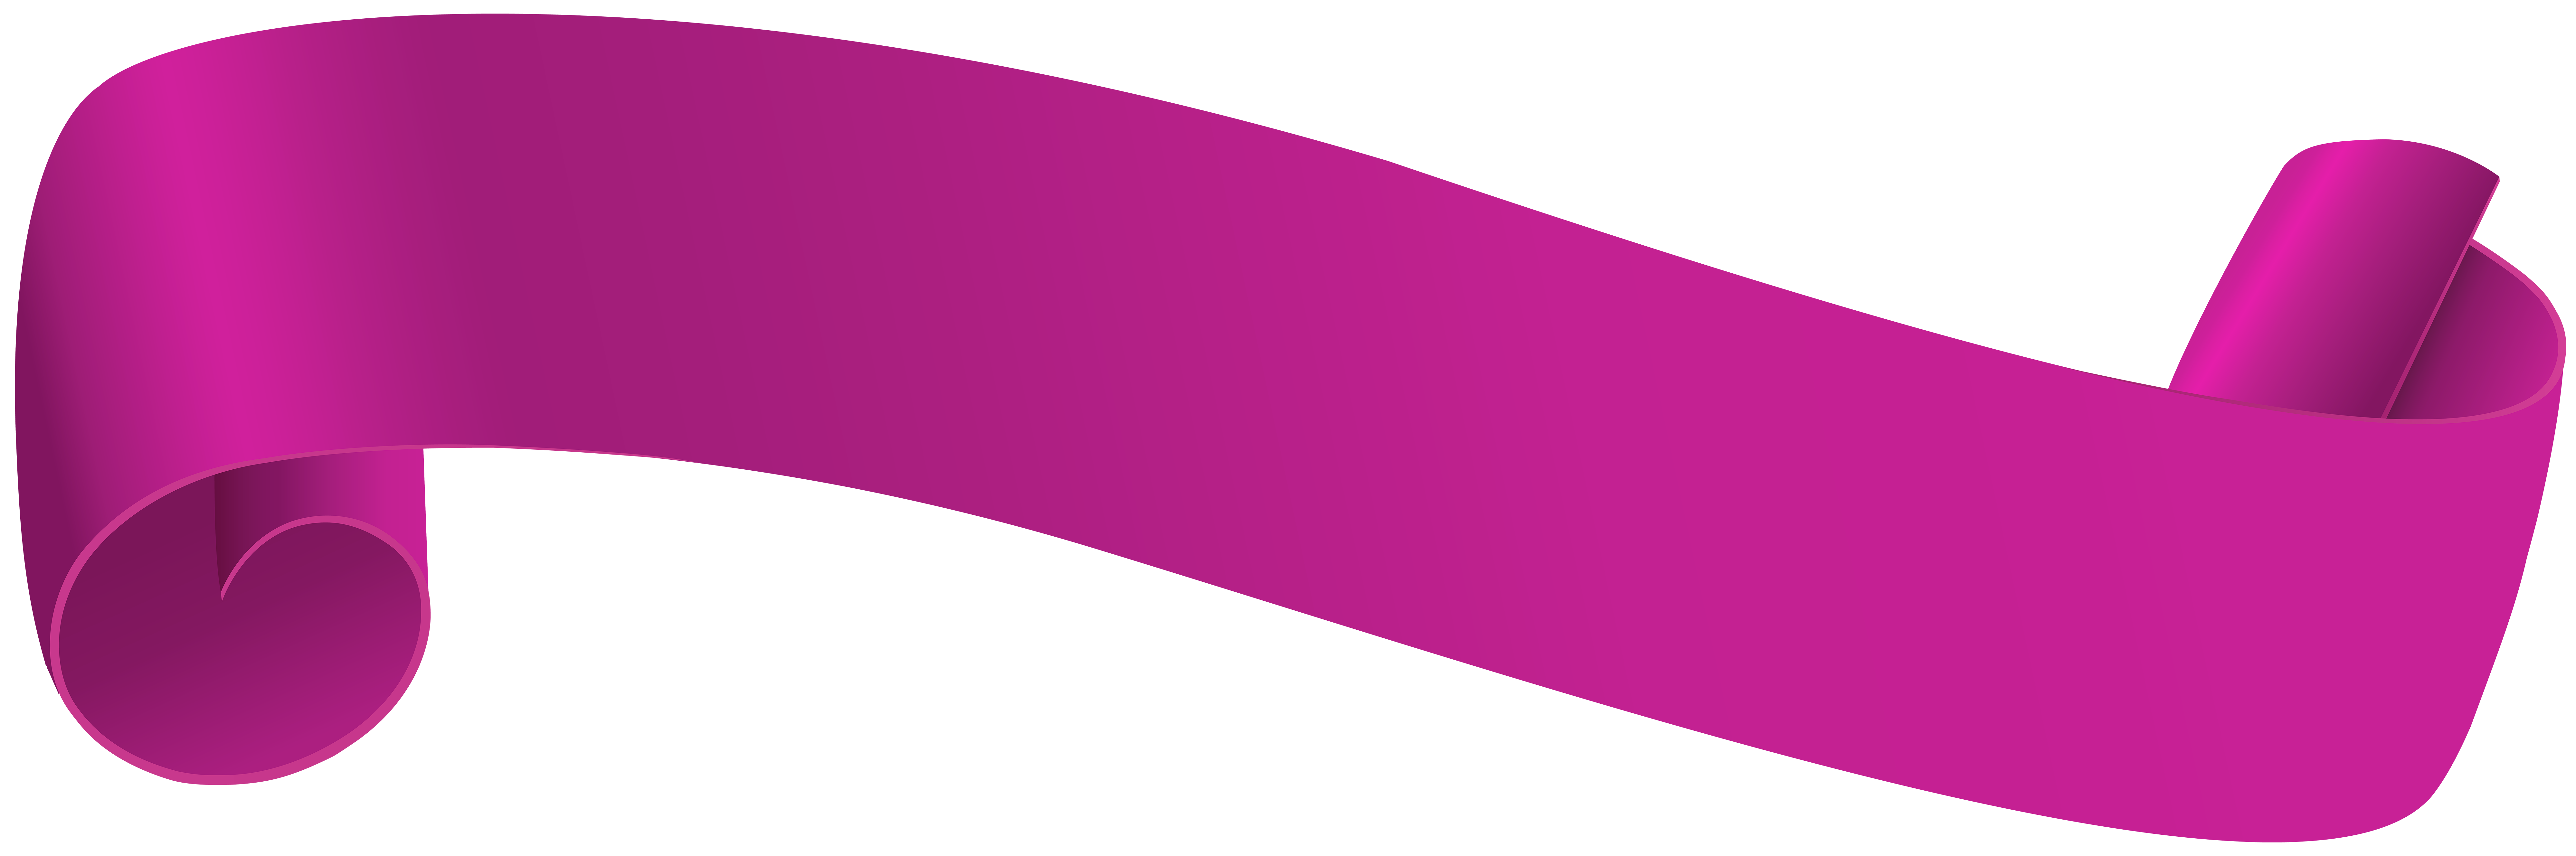 Pink transparent clip art. Pennant clipart vertical banner